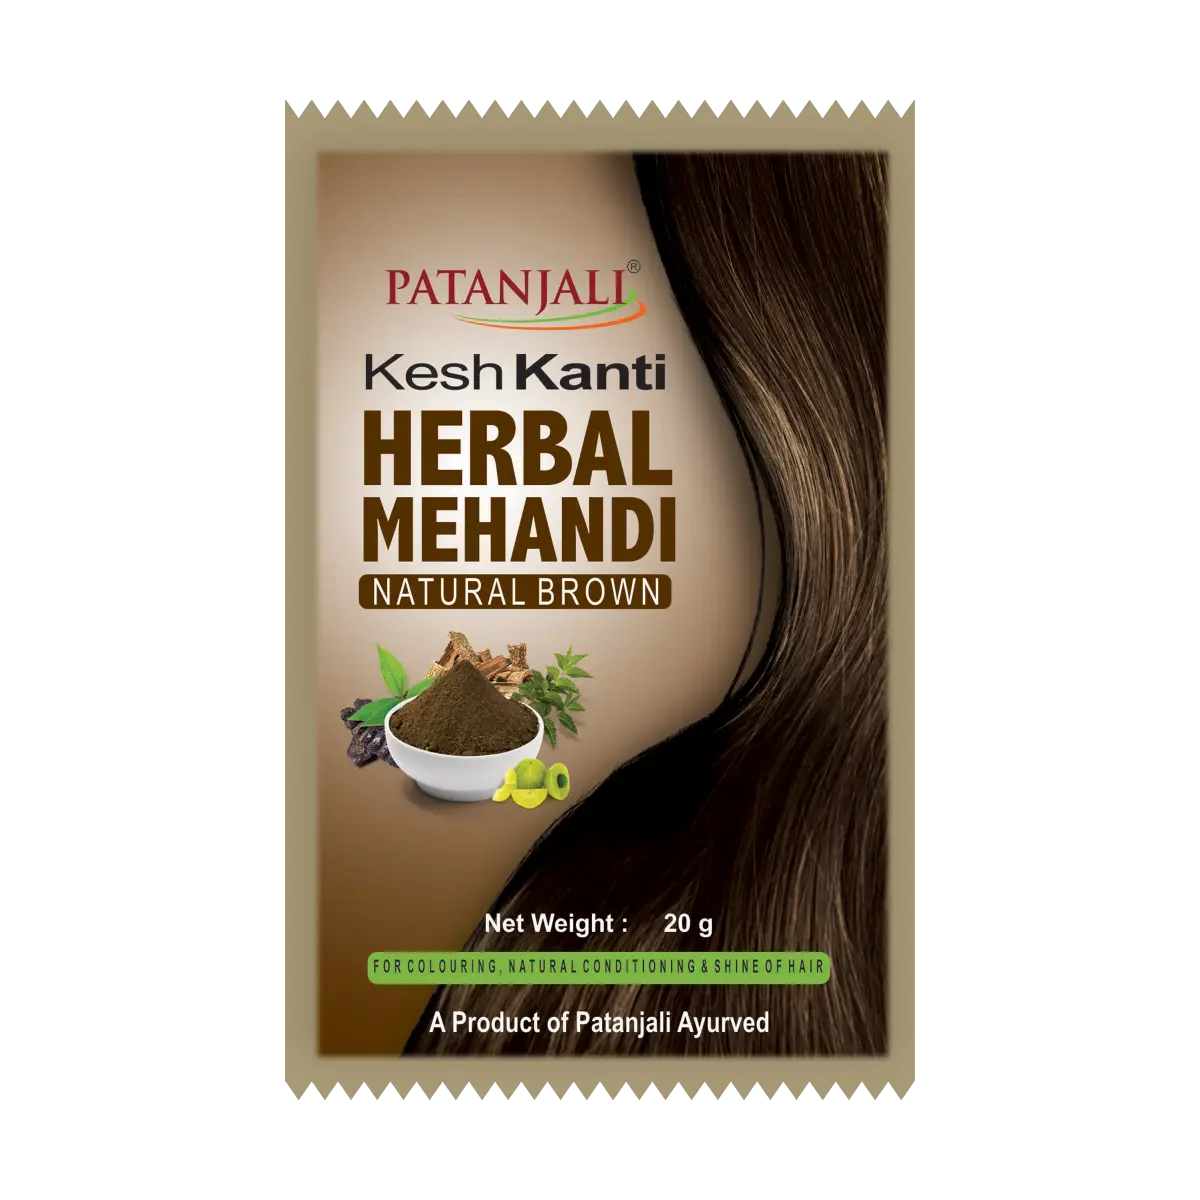 Patanjali Kesh Kanti Herbal Mehandi. colors available Natural Brown,, Natural Black, Dark Brown, Burgundy